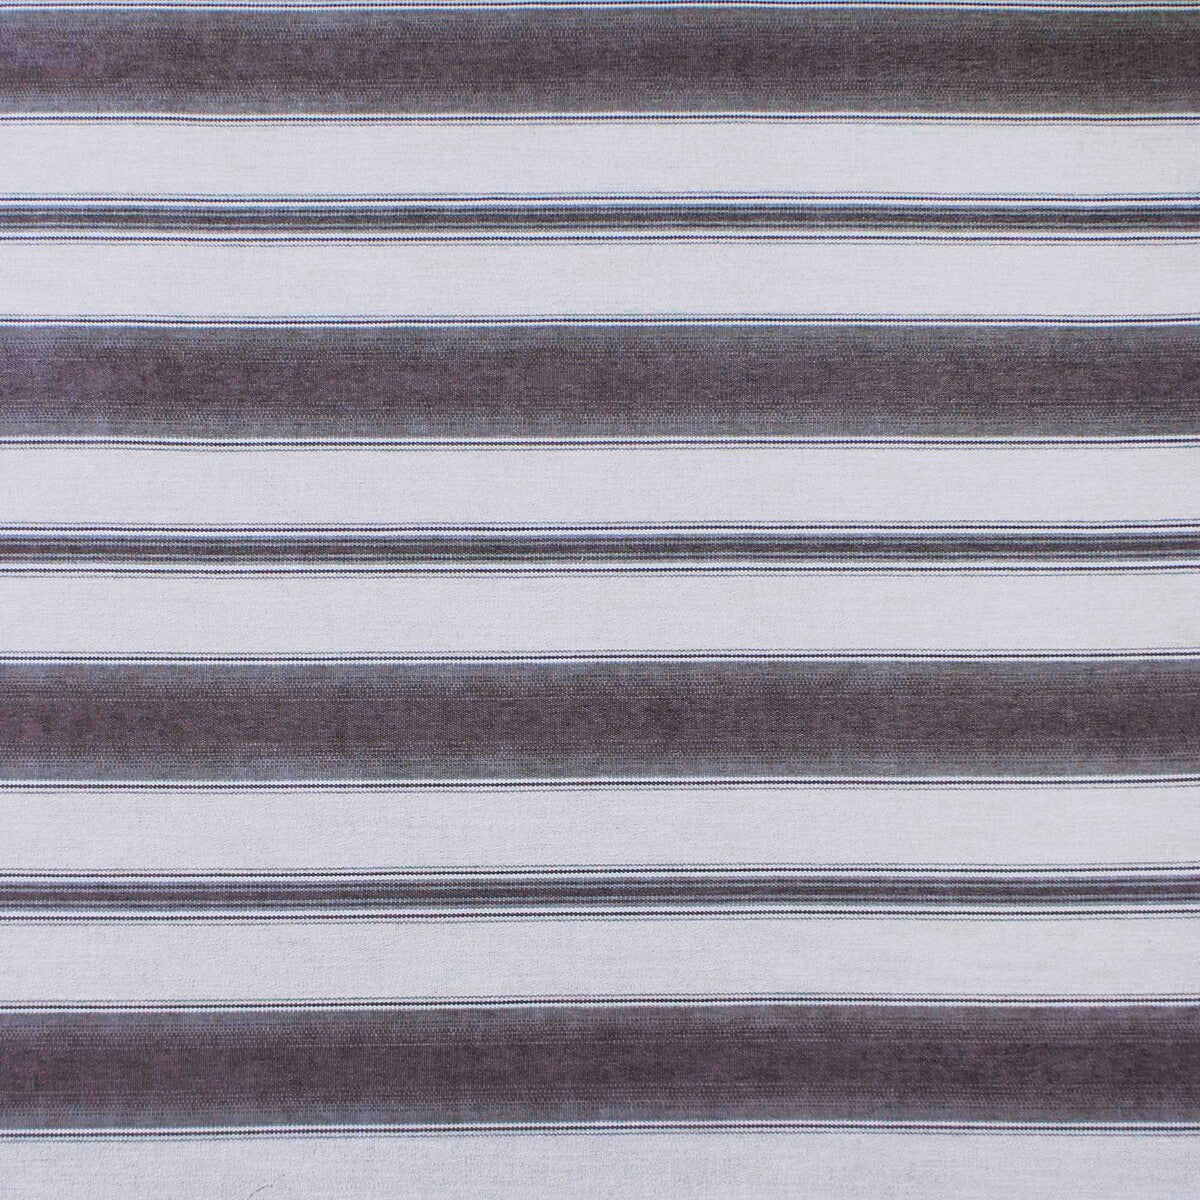 Teodosio fabric in topo color - pattern LCT1125.003.0 - by Gaston y Daniela in the Lorenzo Castillo IX Hesperia collection